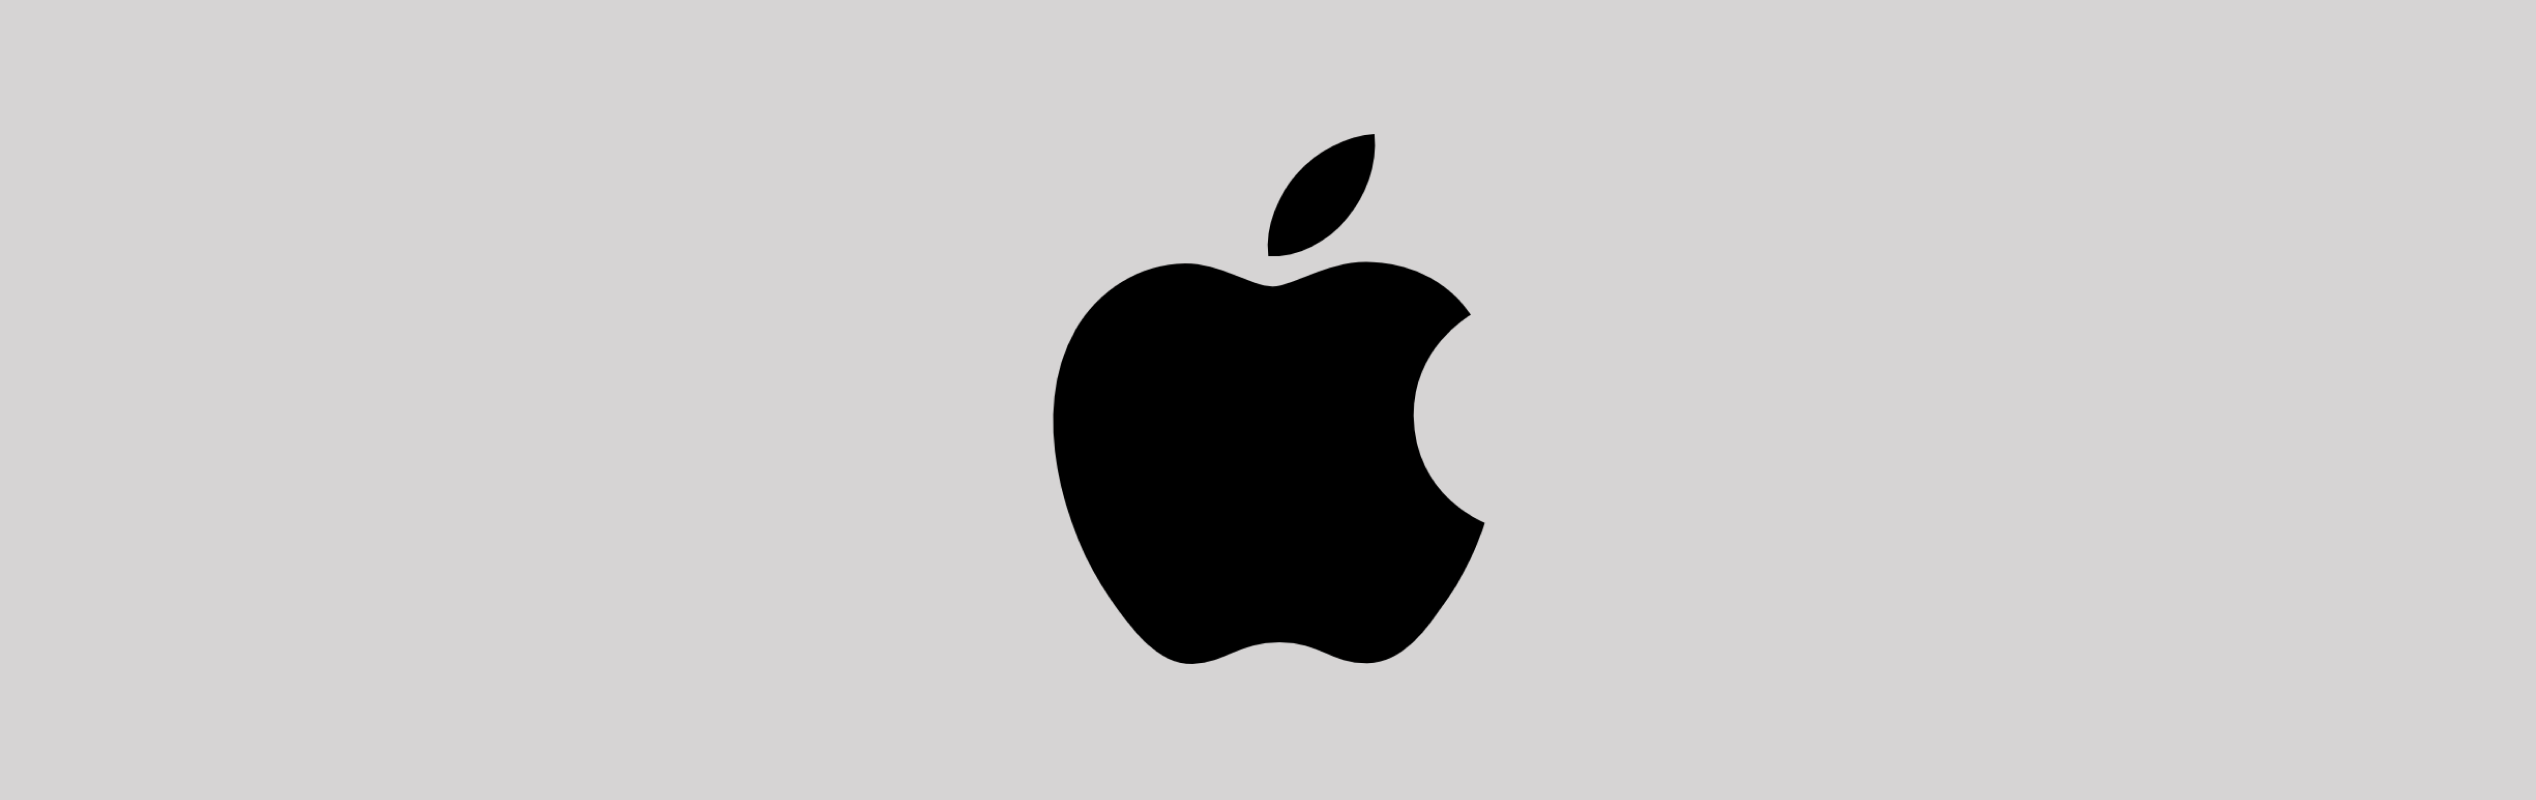 10 безупречных писем Apple